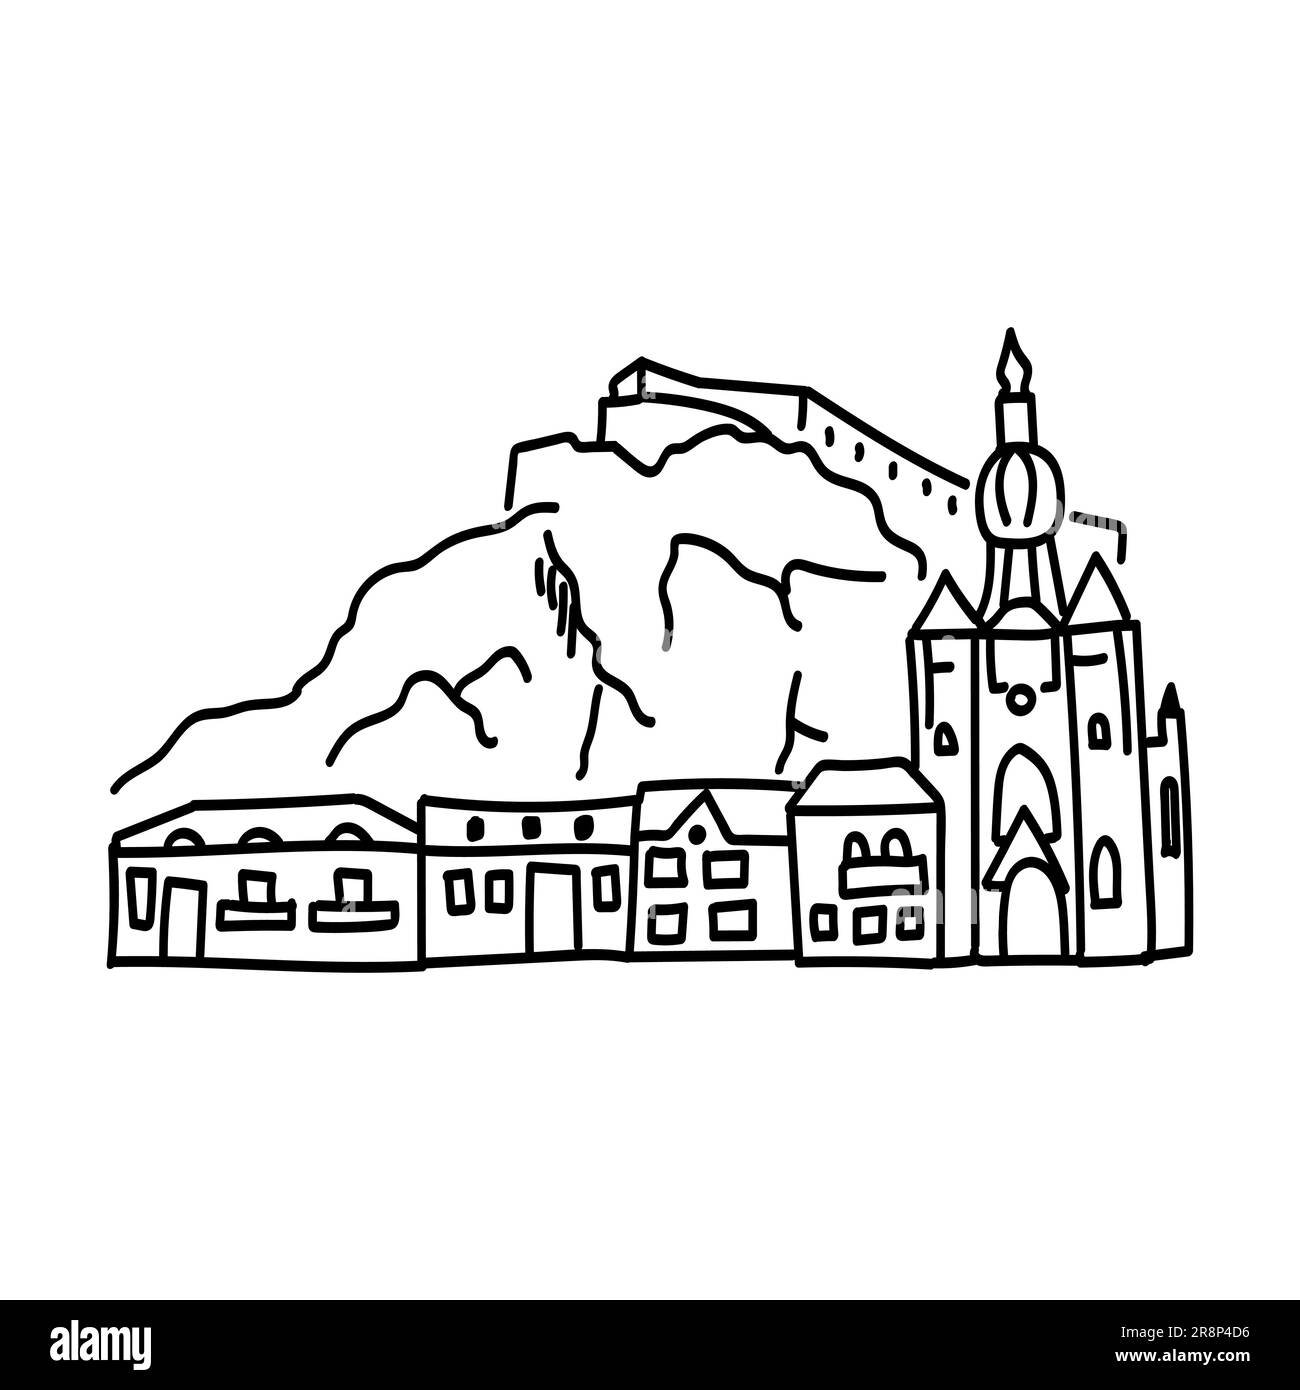 Dessin à la main de l'icône de contour de doodle du château européen dans les montagnes. Sites touristiques des villes d'europe. dessins simples de façades Illustration de Vecteur